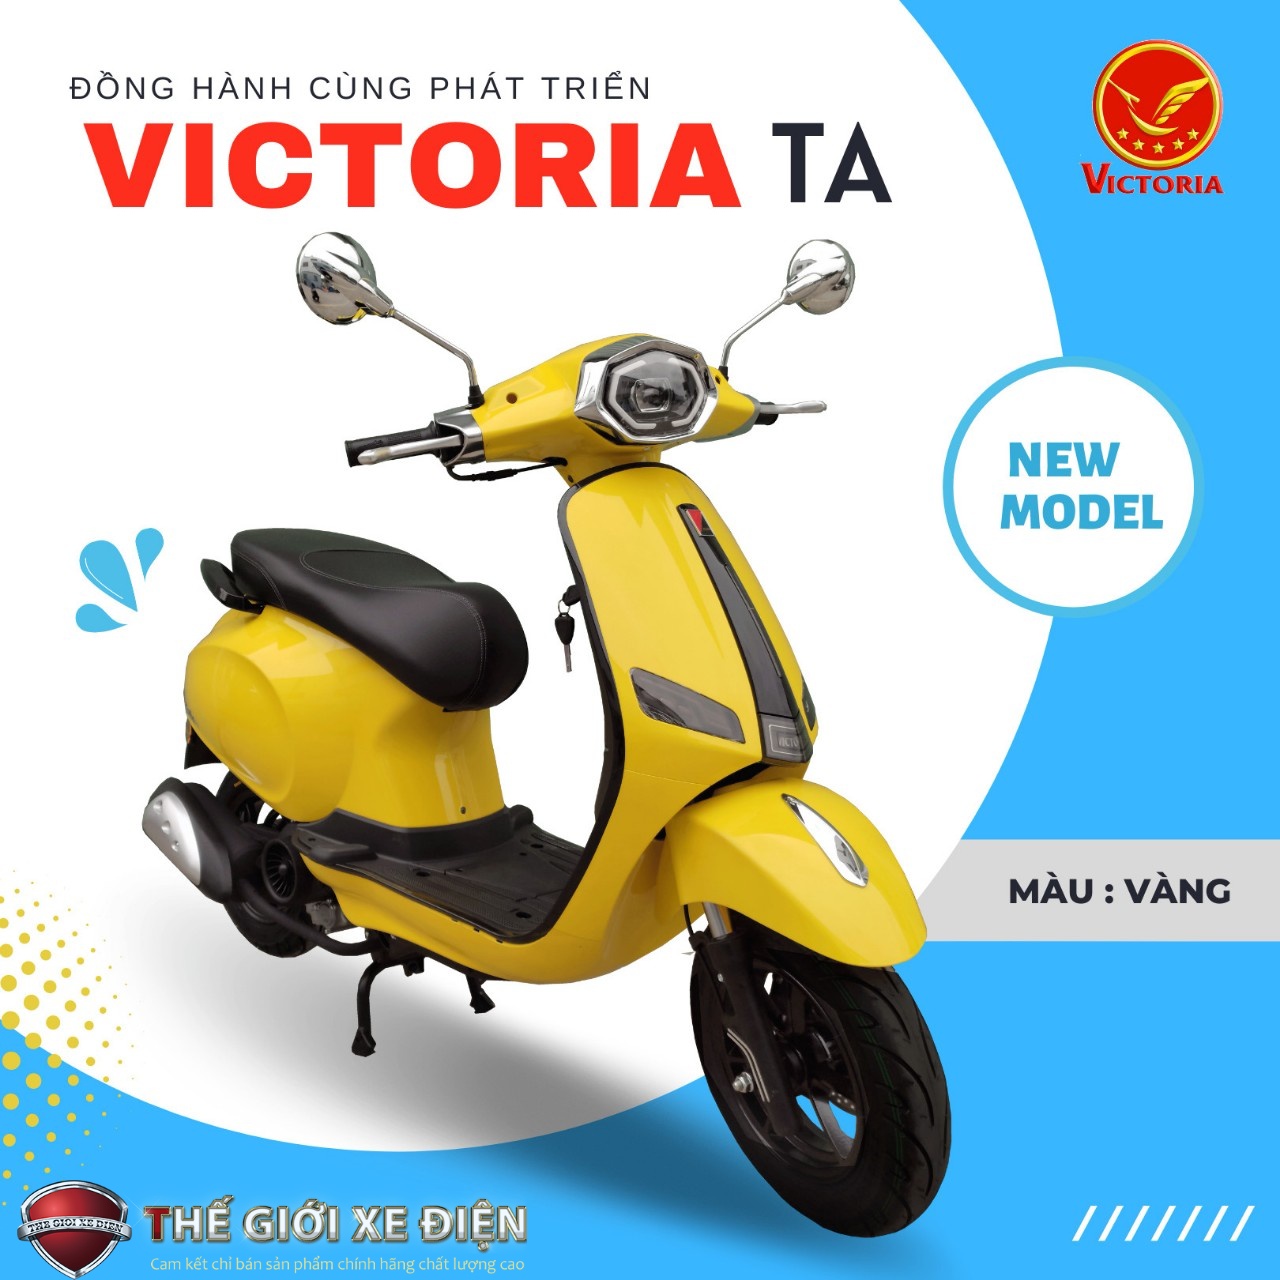 Hướng dẫn hô biến xe tay ga 50cc Victoria TA Việt Nhật 2022 lúc nào cũng bóng bẩy như mới